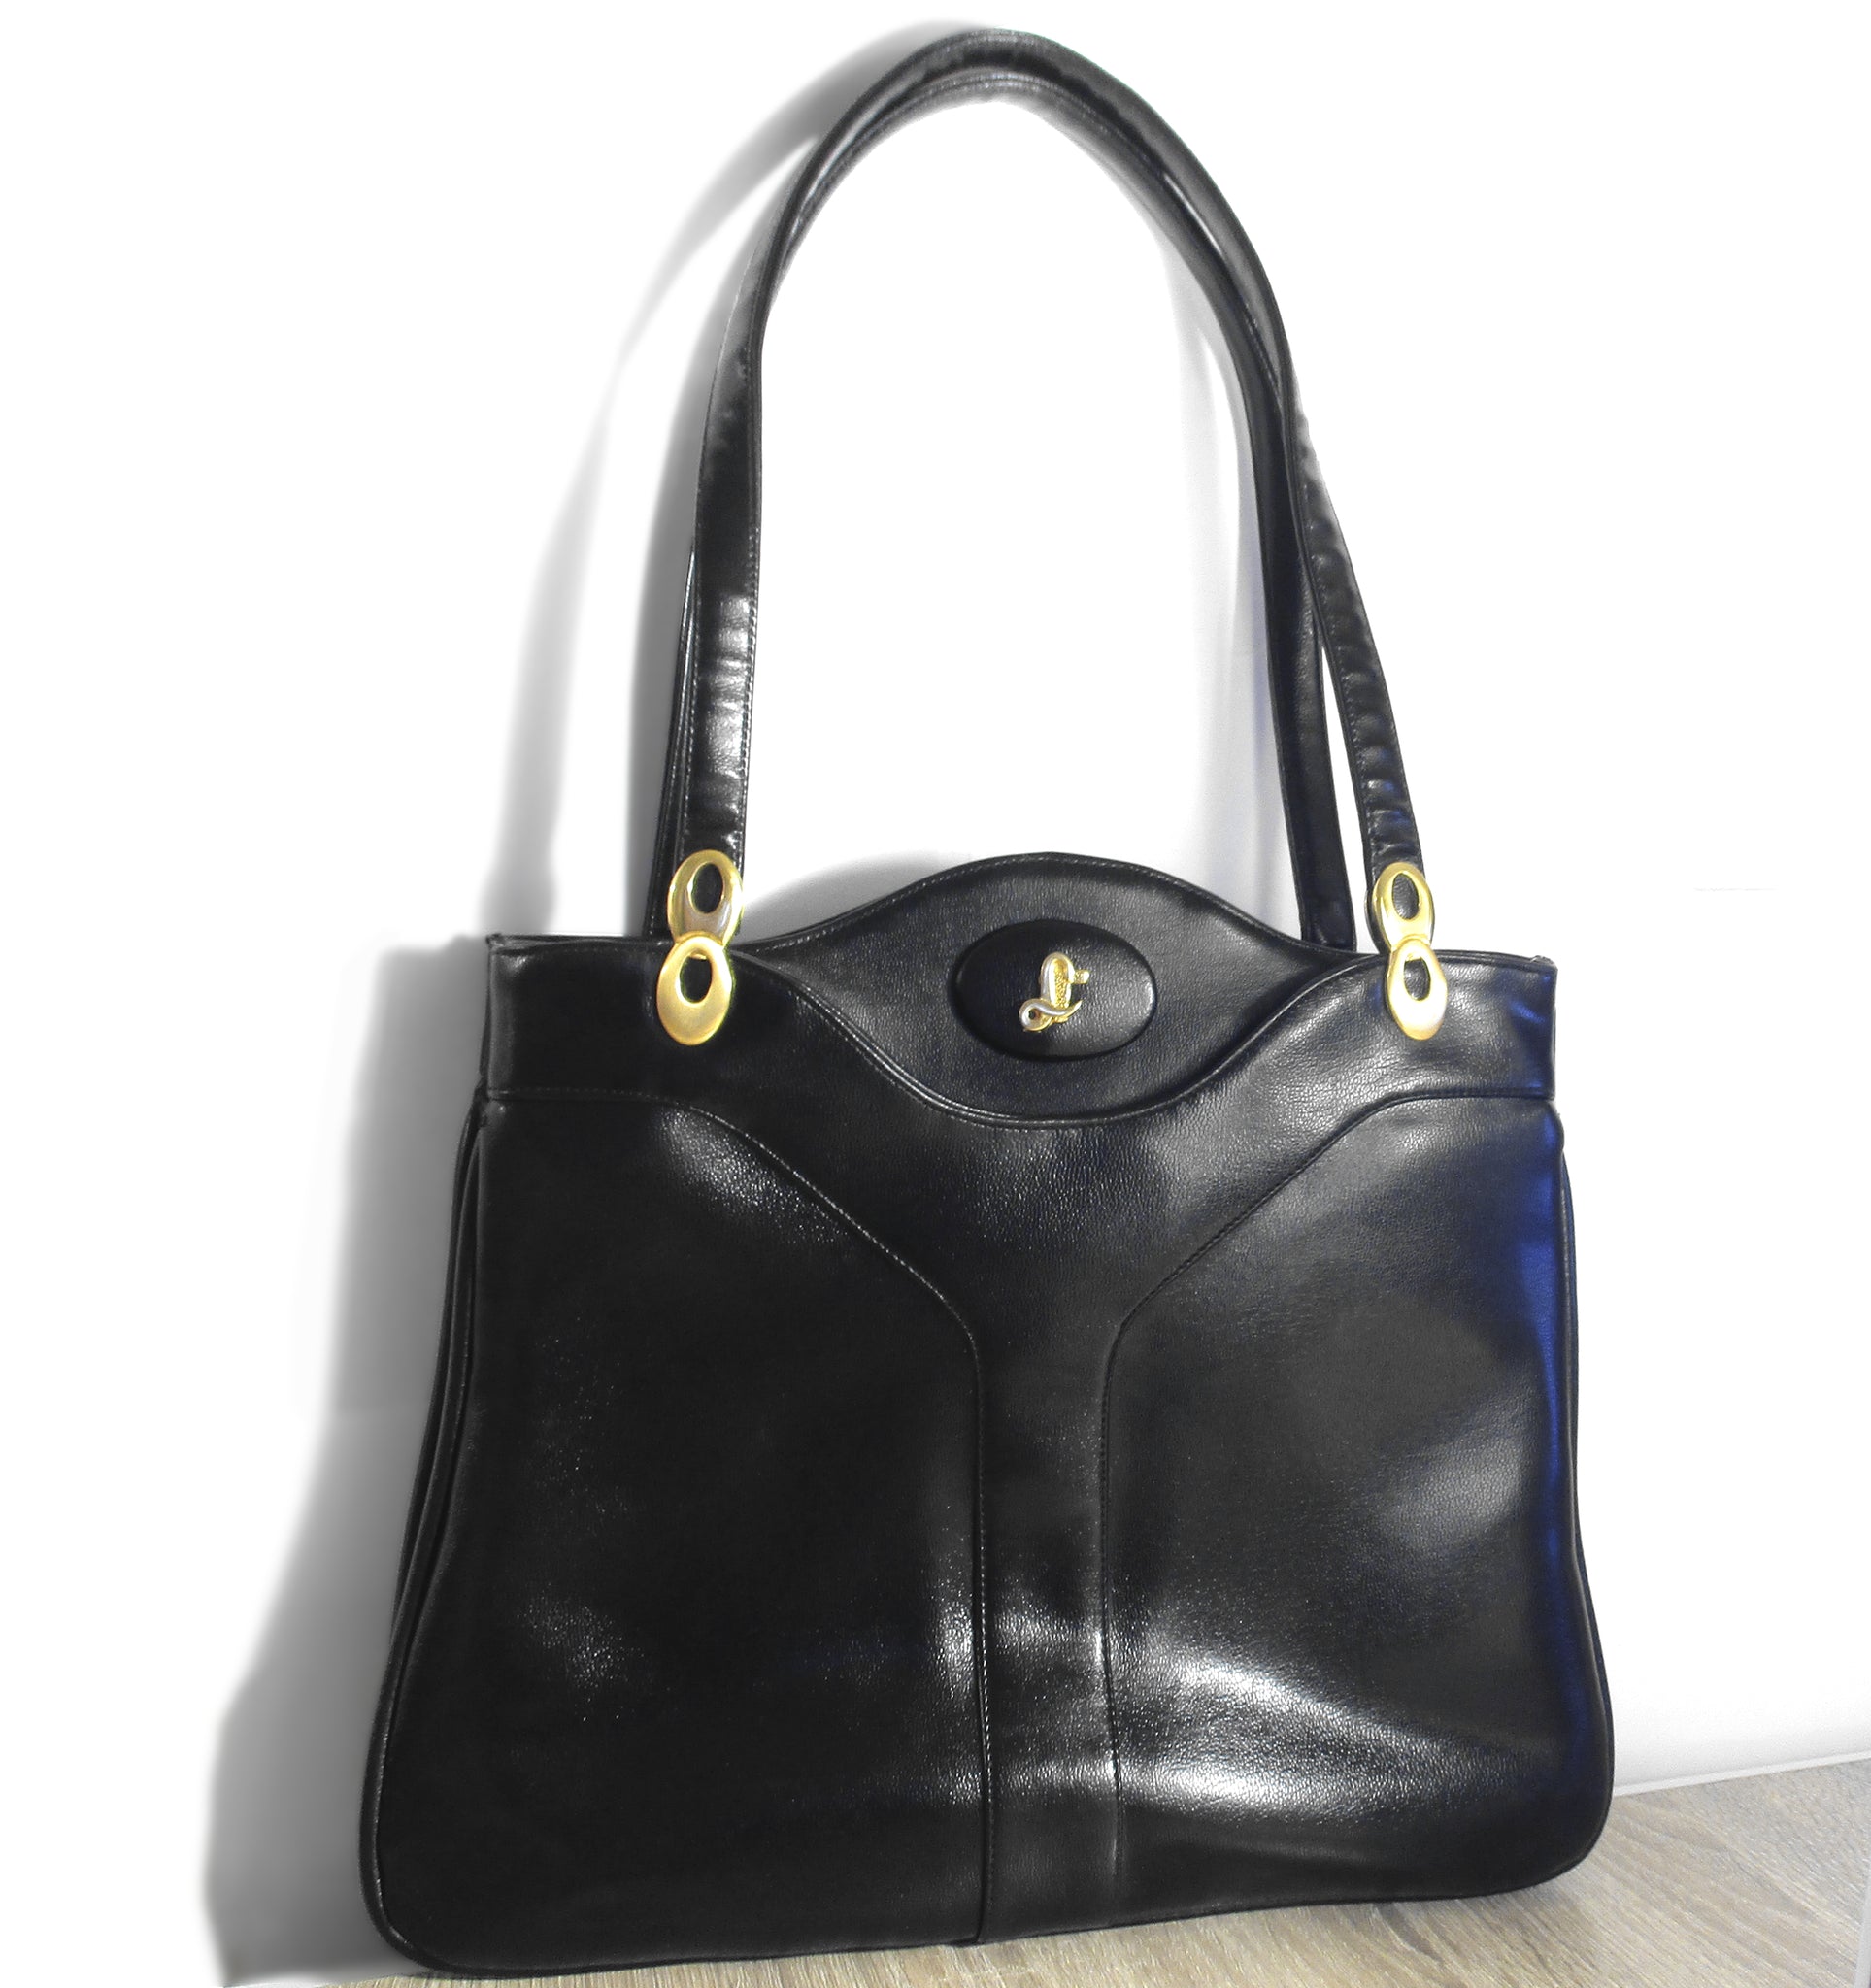 Vintage Fashionable Handbag/shoulder Bag